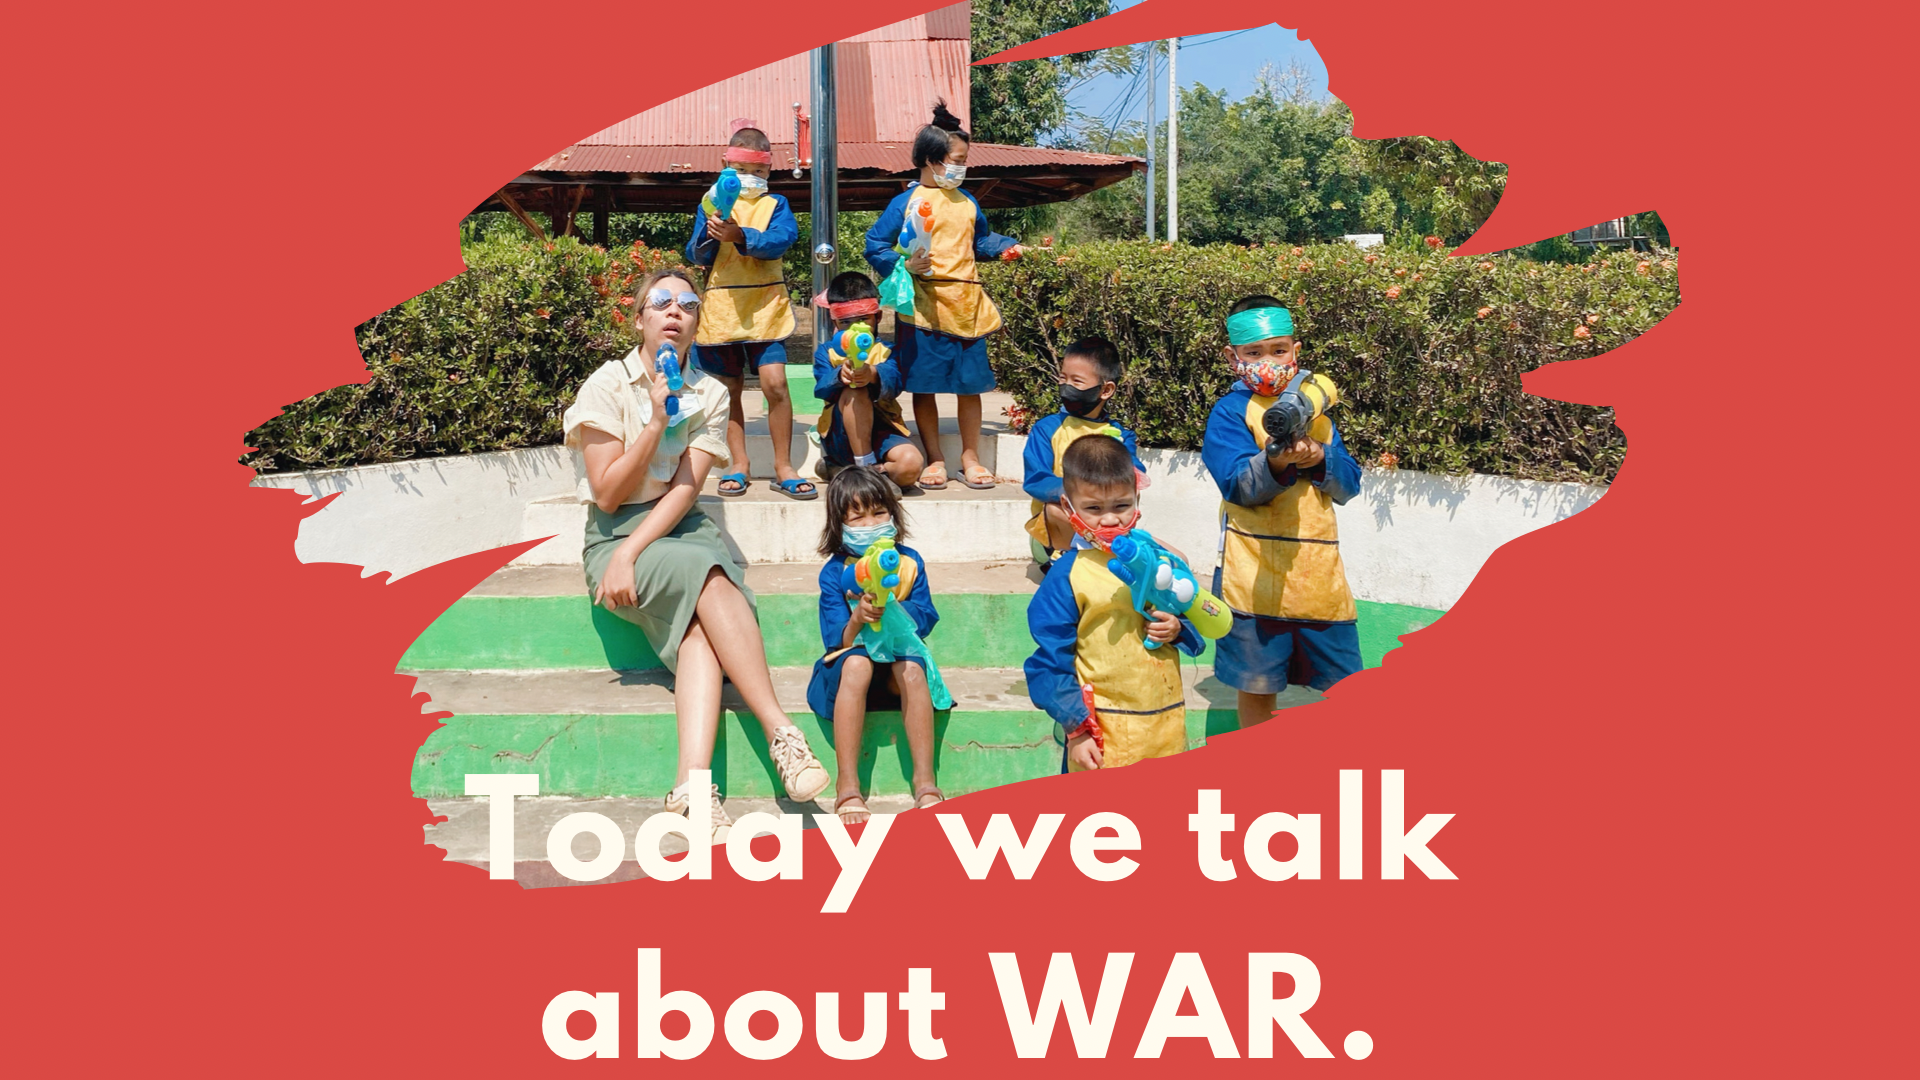 ภาพประกอบไอเดีย เด็กๆคะ วันนี้เราจะคุยกันเรื่องสงคราม …